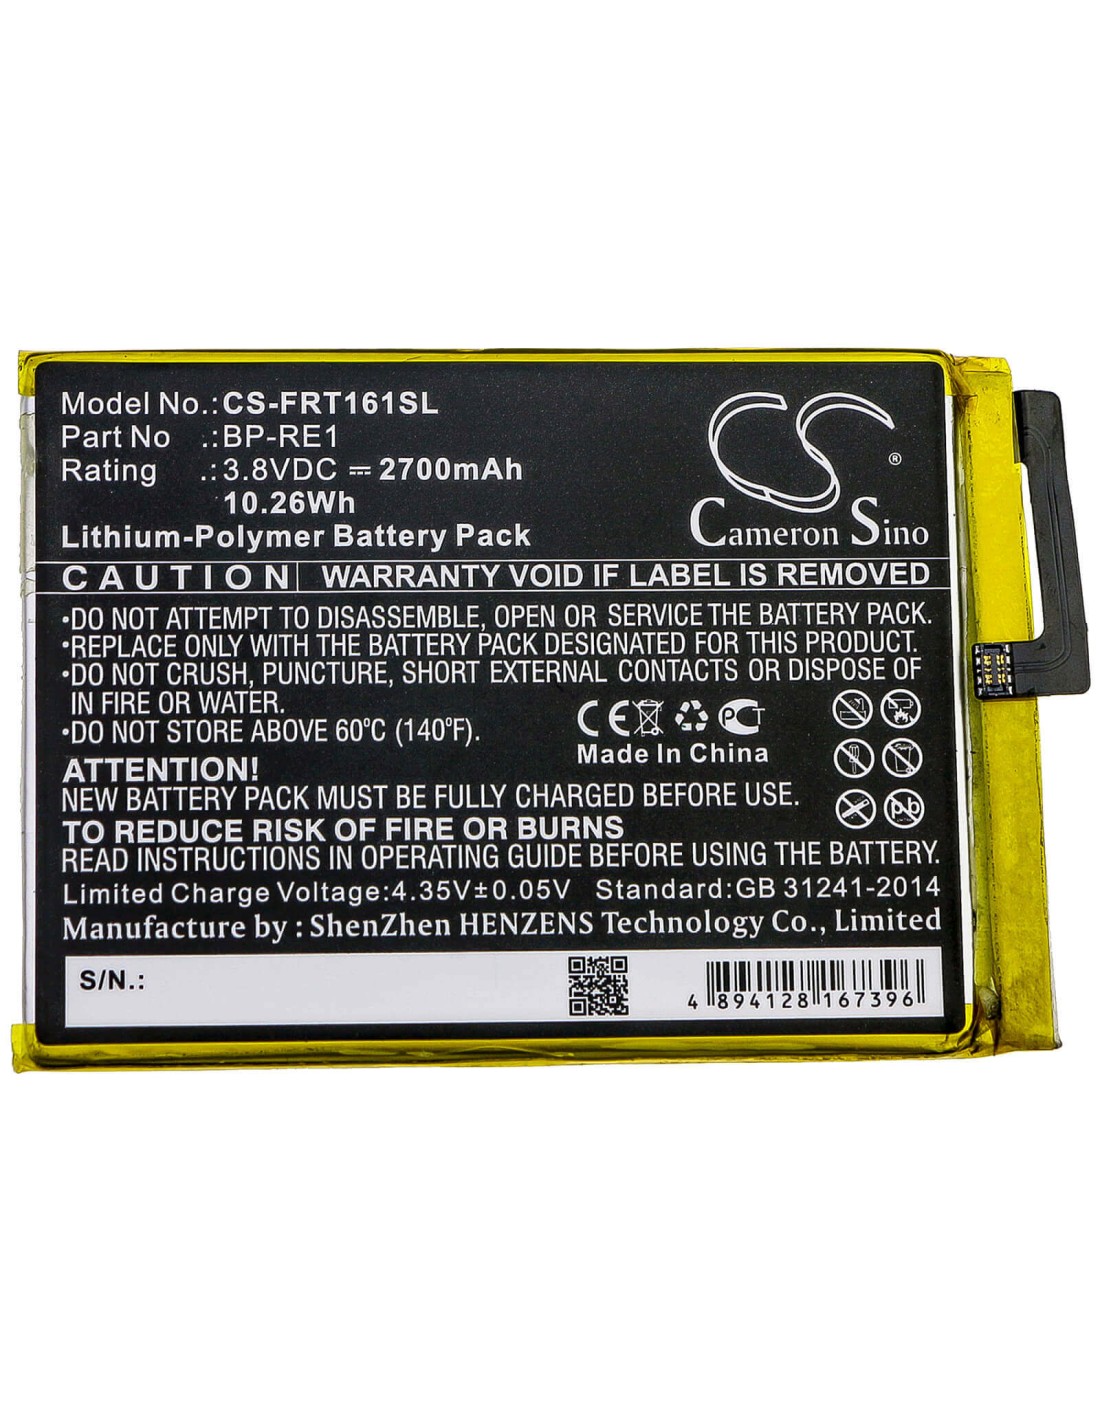 Battery for Freetel, Ftj161b, Ftj161b-rei, Ftj161b-rei-bk 3.8V, 2700mAh - 10.26Wh